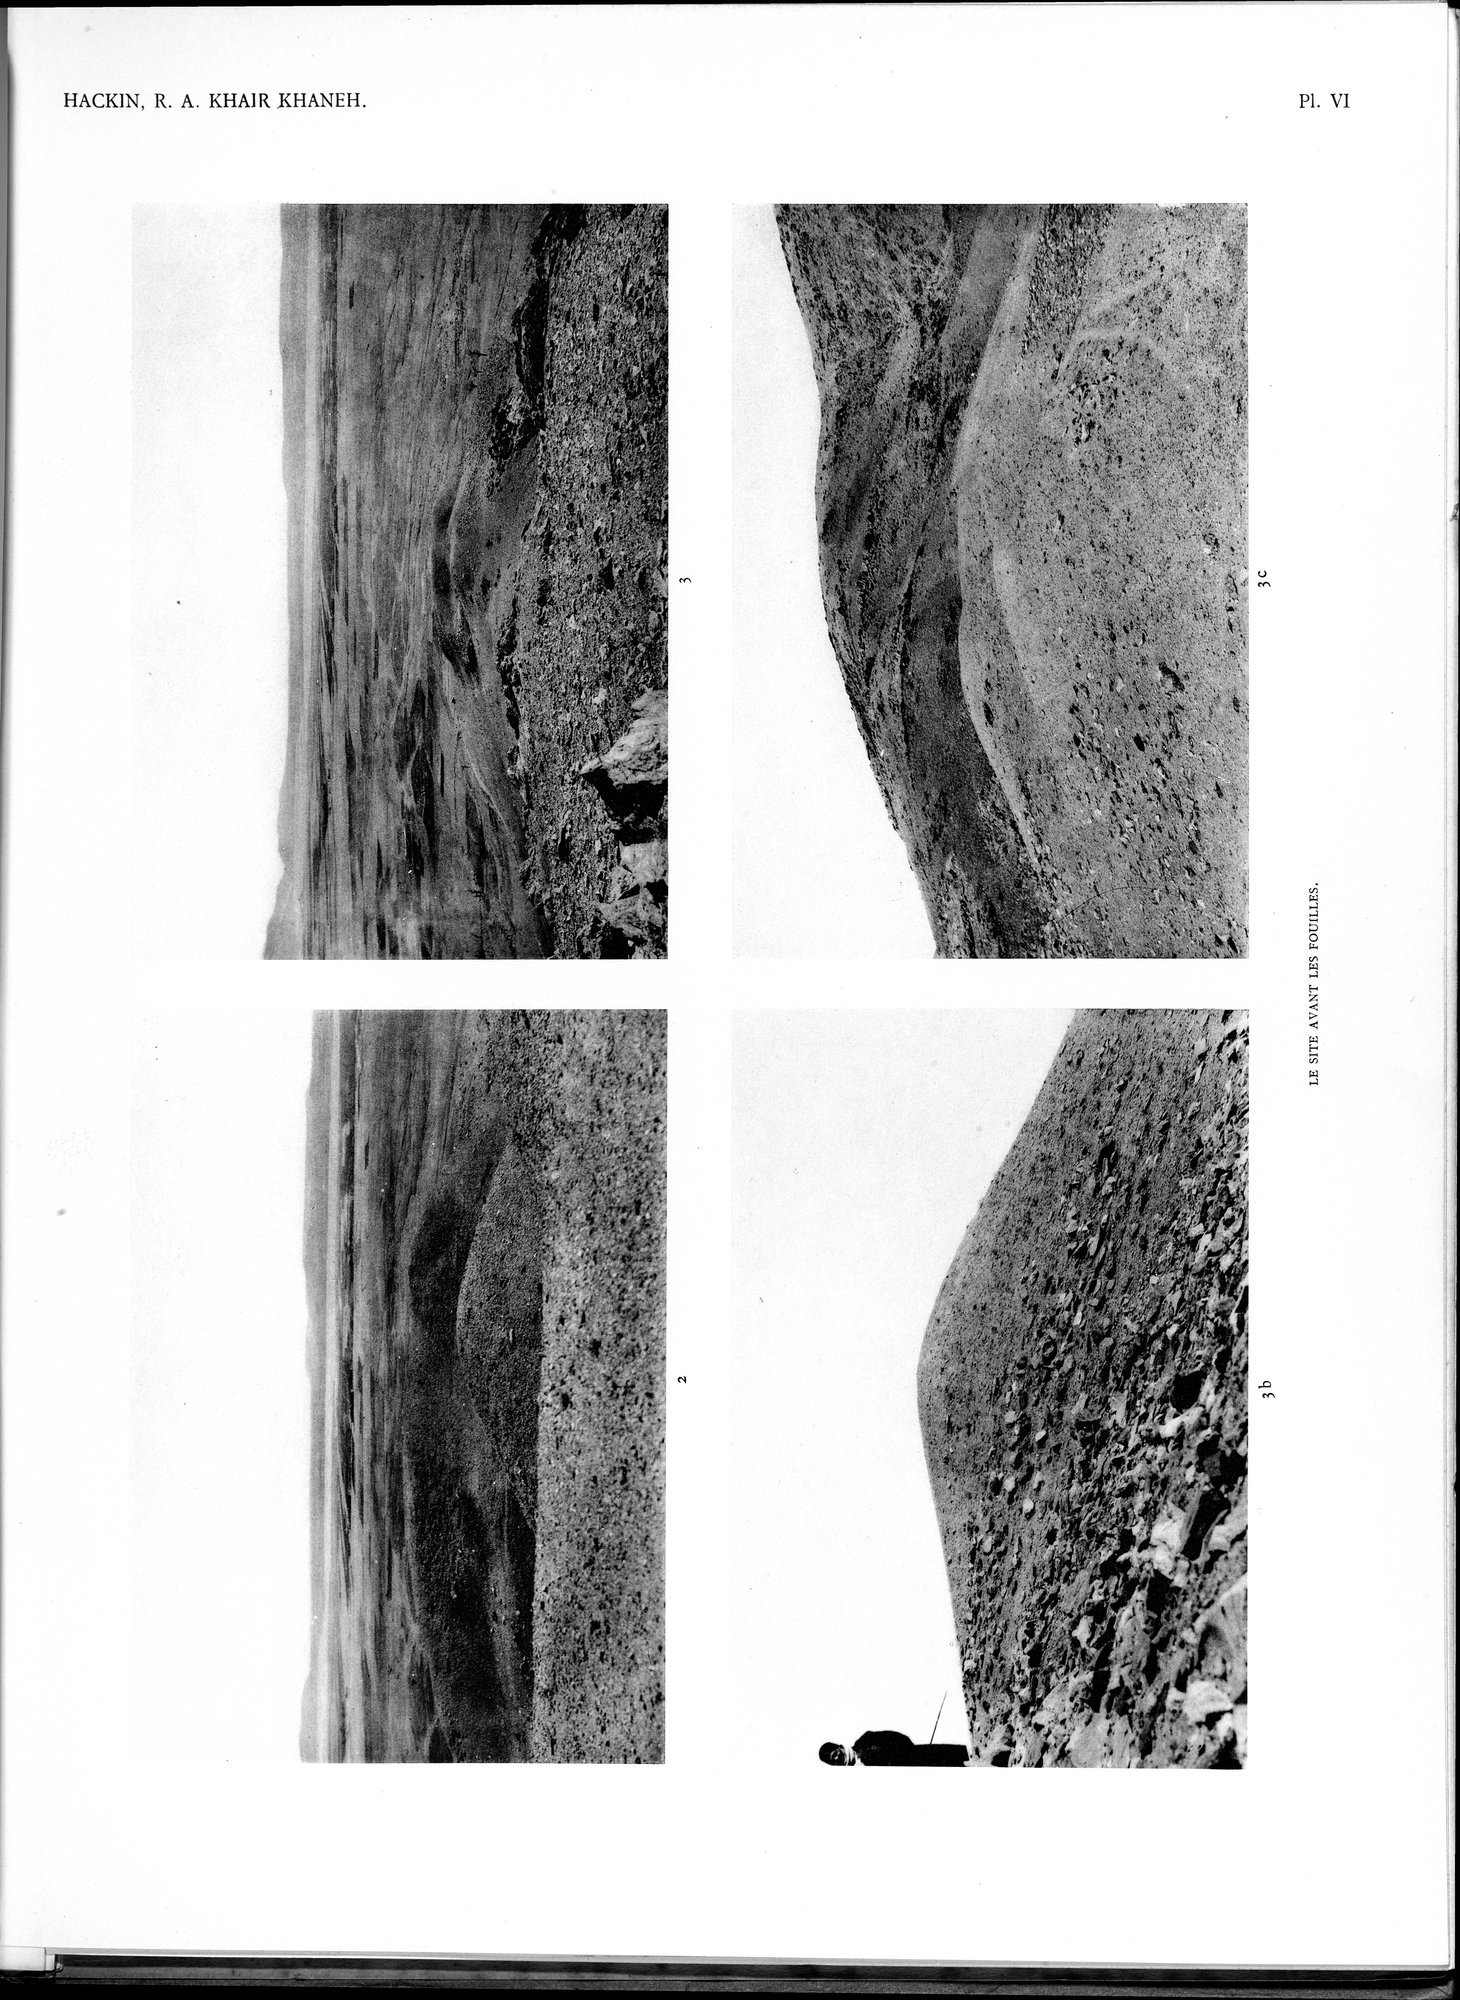 Recherches Archéologiques au Col de Khair khaneh près de Kābul : vol.1 / Page 61 (Grayscale High Resolution Image)